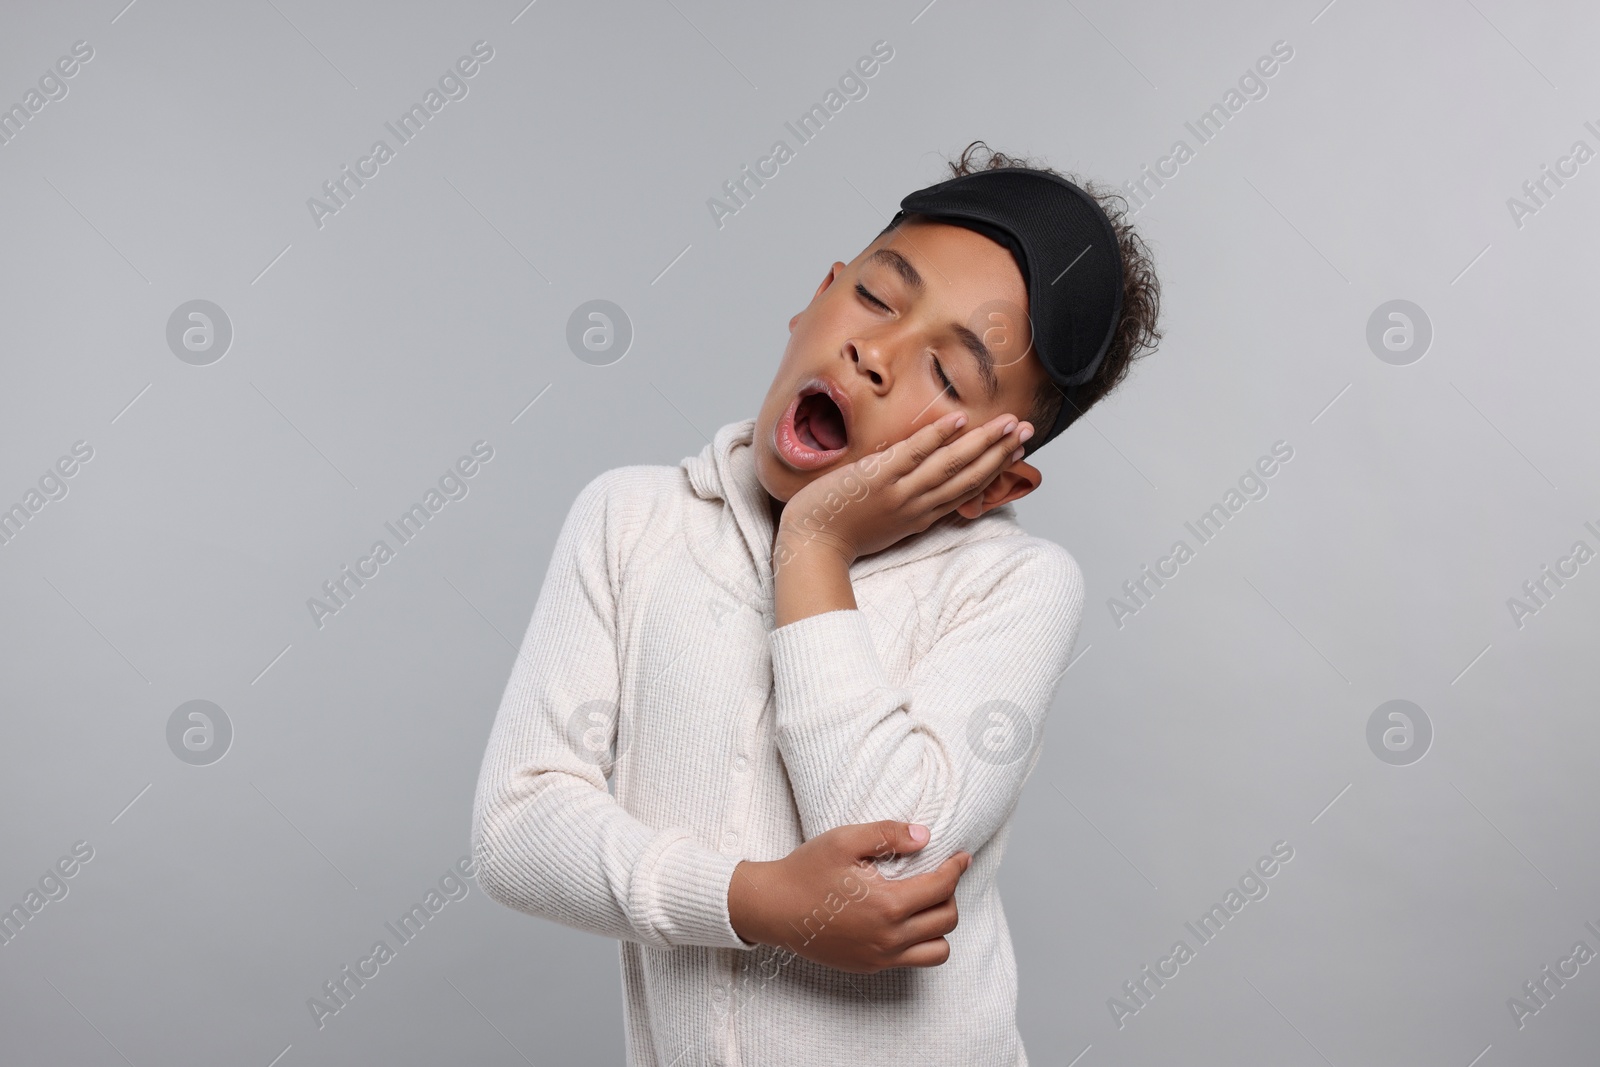 Photo of Boy with sleep mask yawning on grey background. Insomnia problem